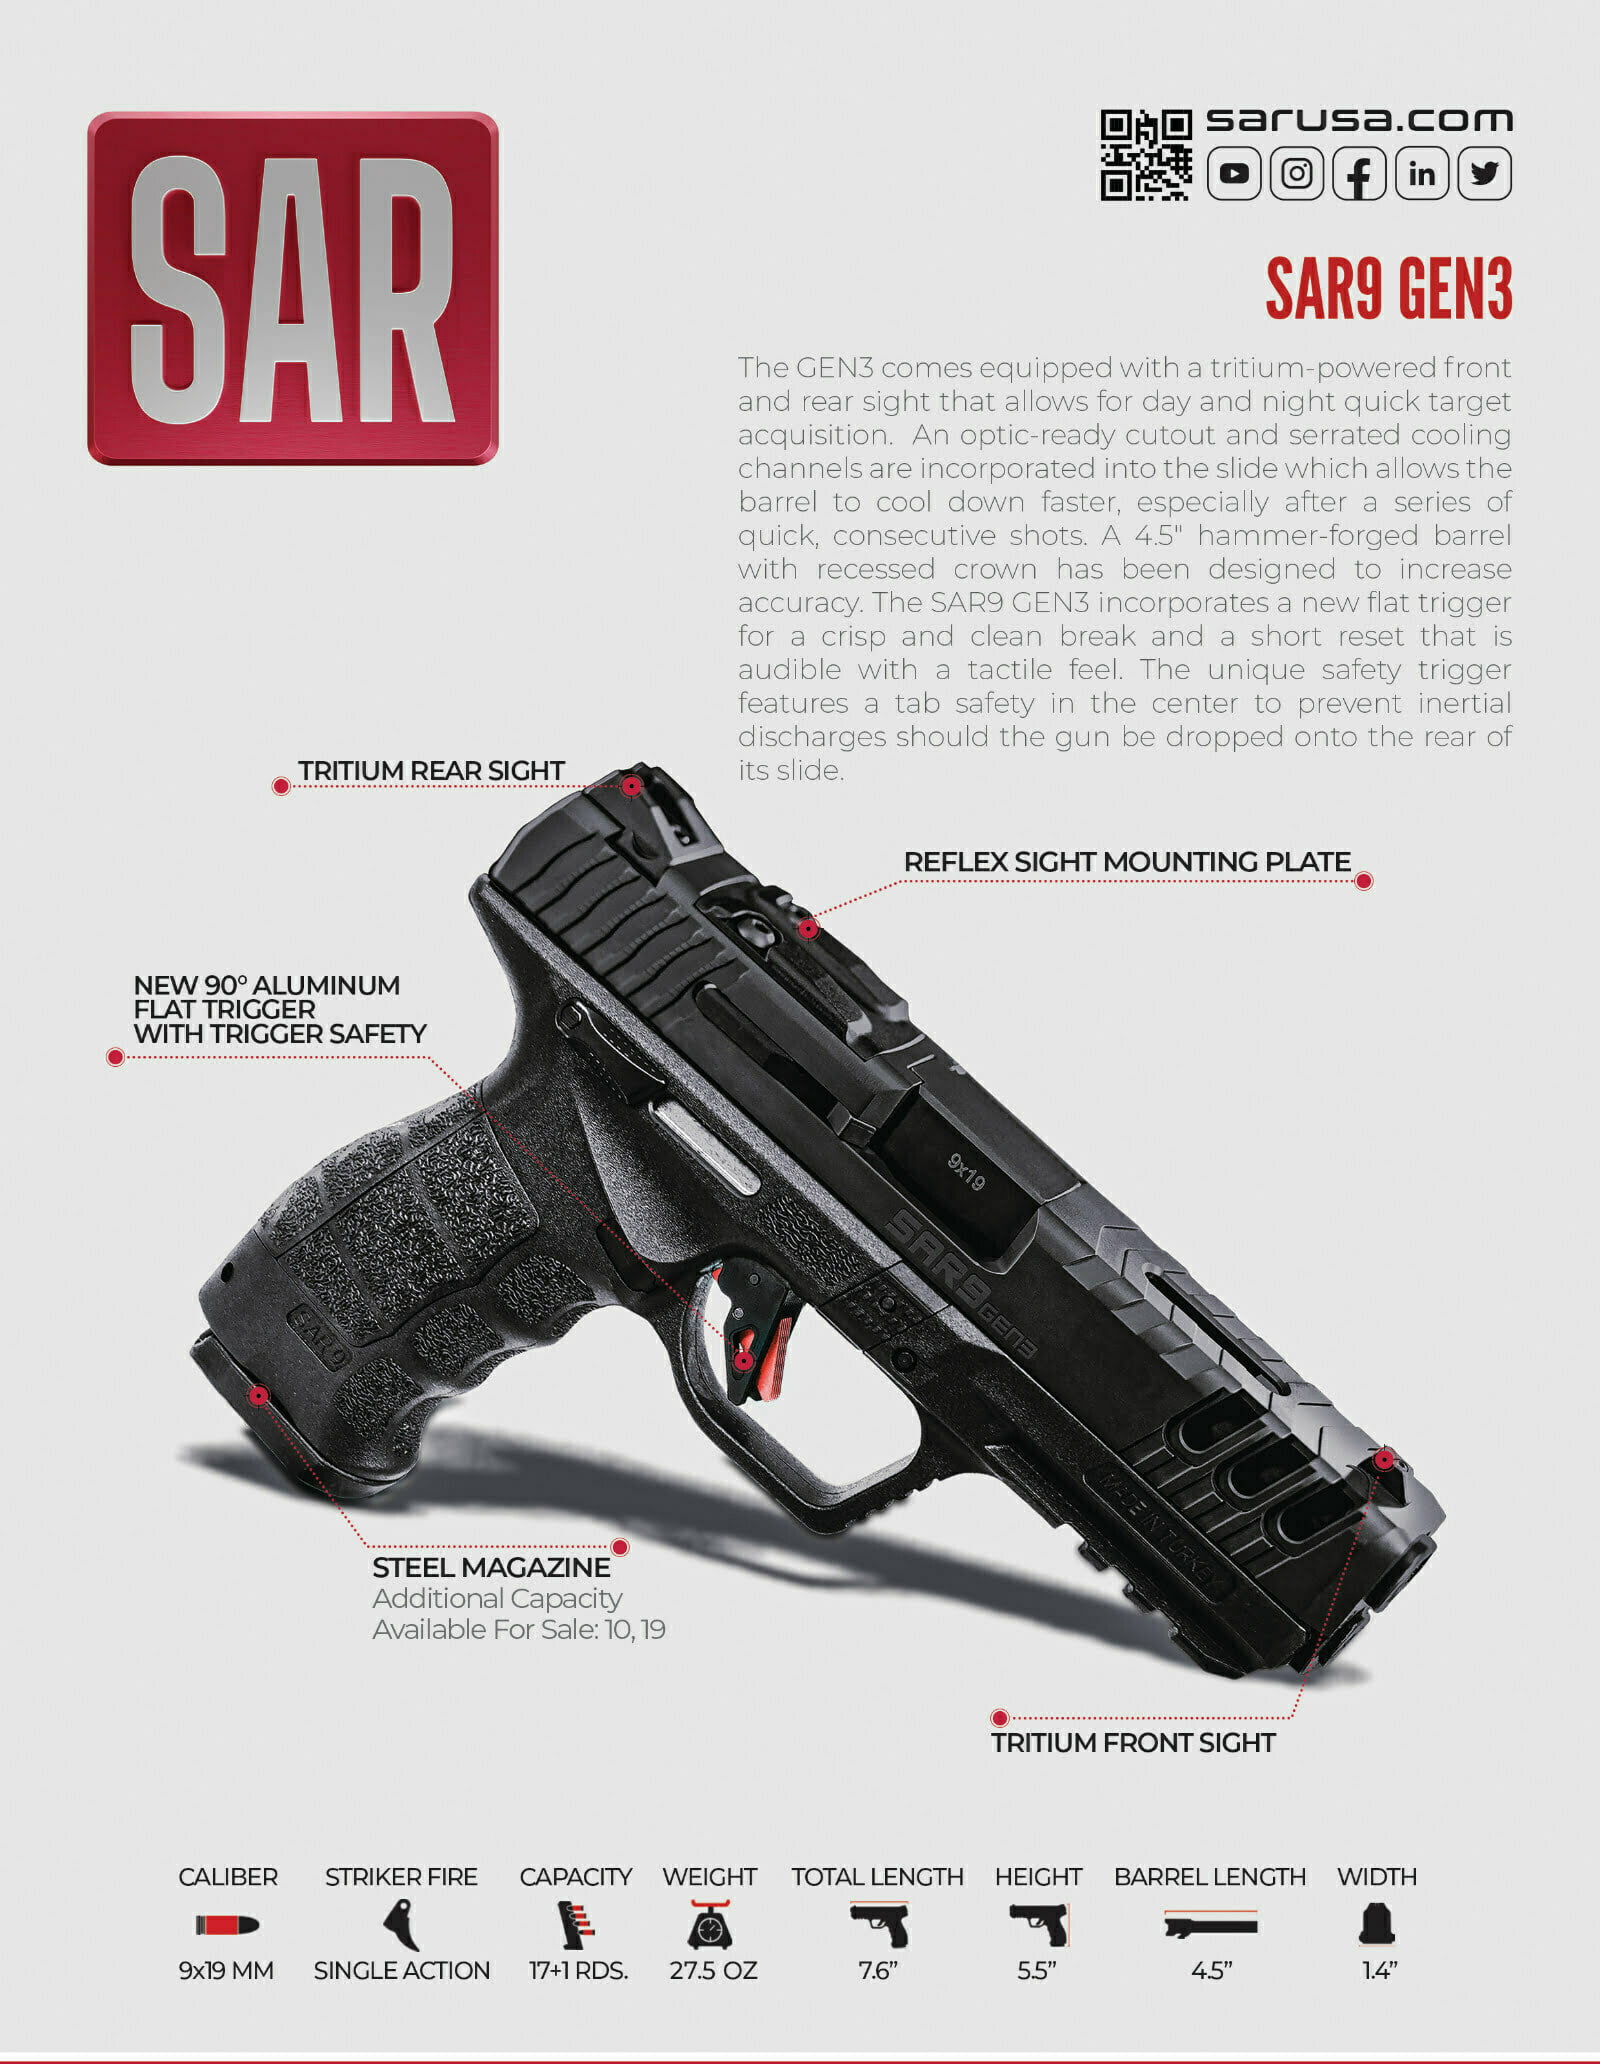 SAR9 GEN 3